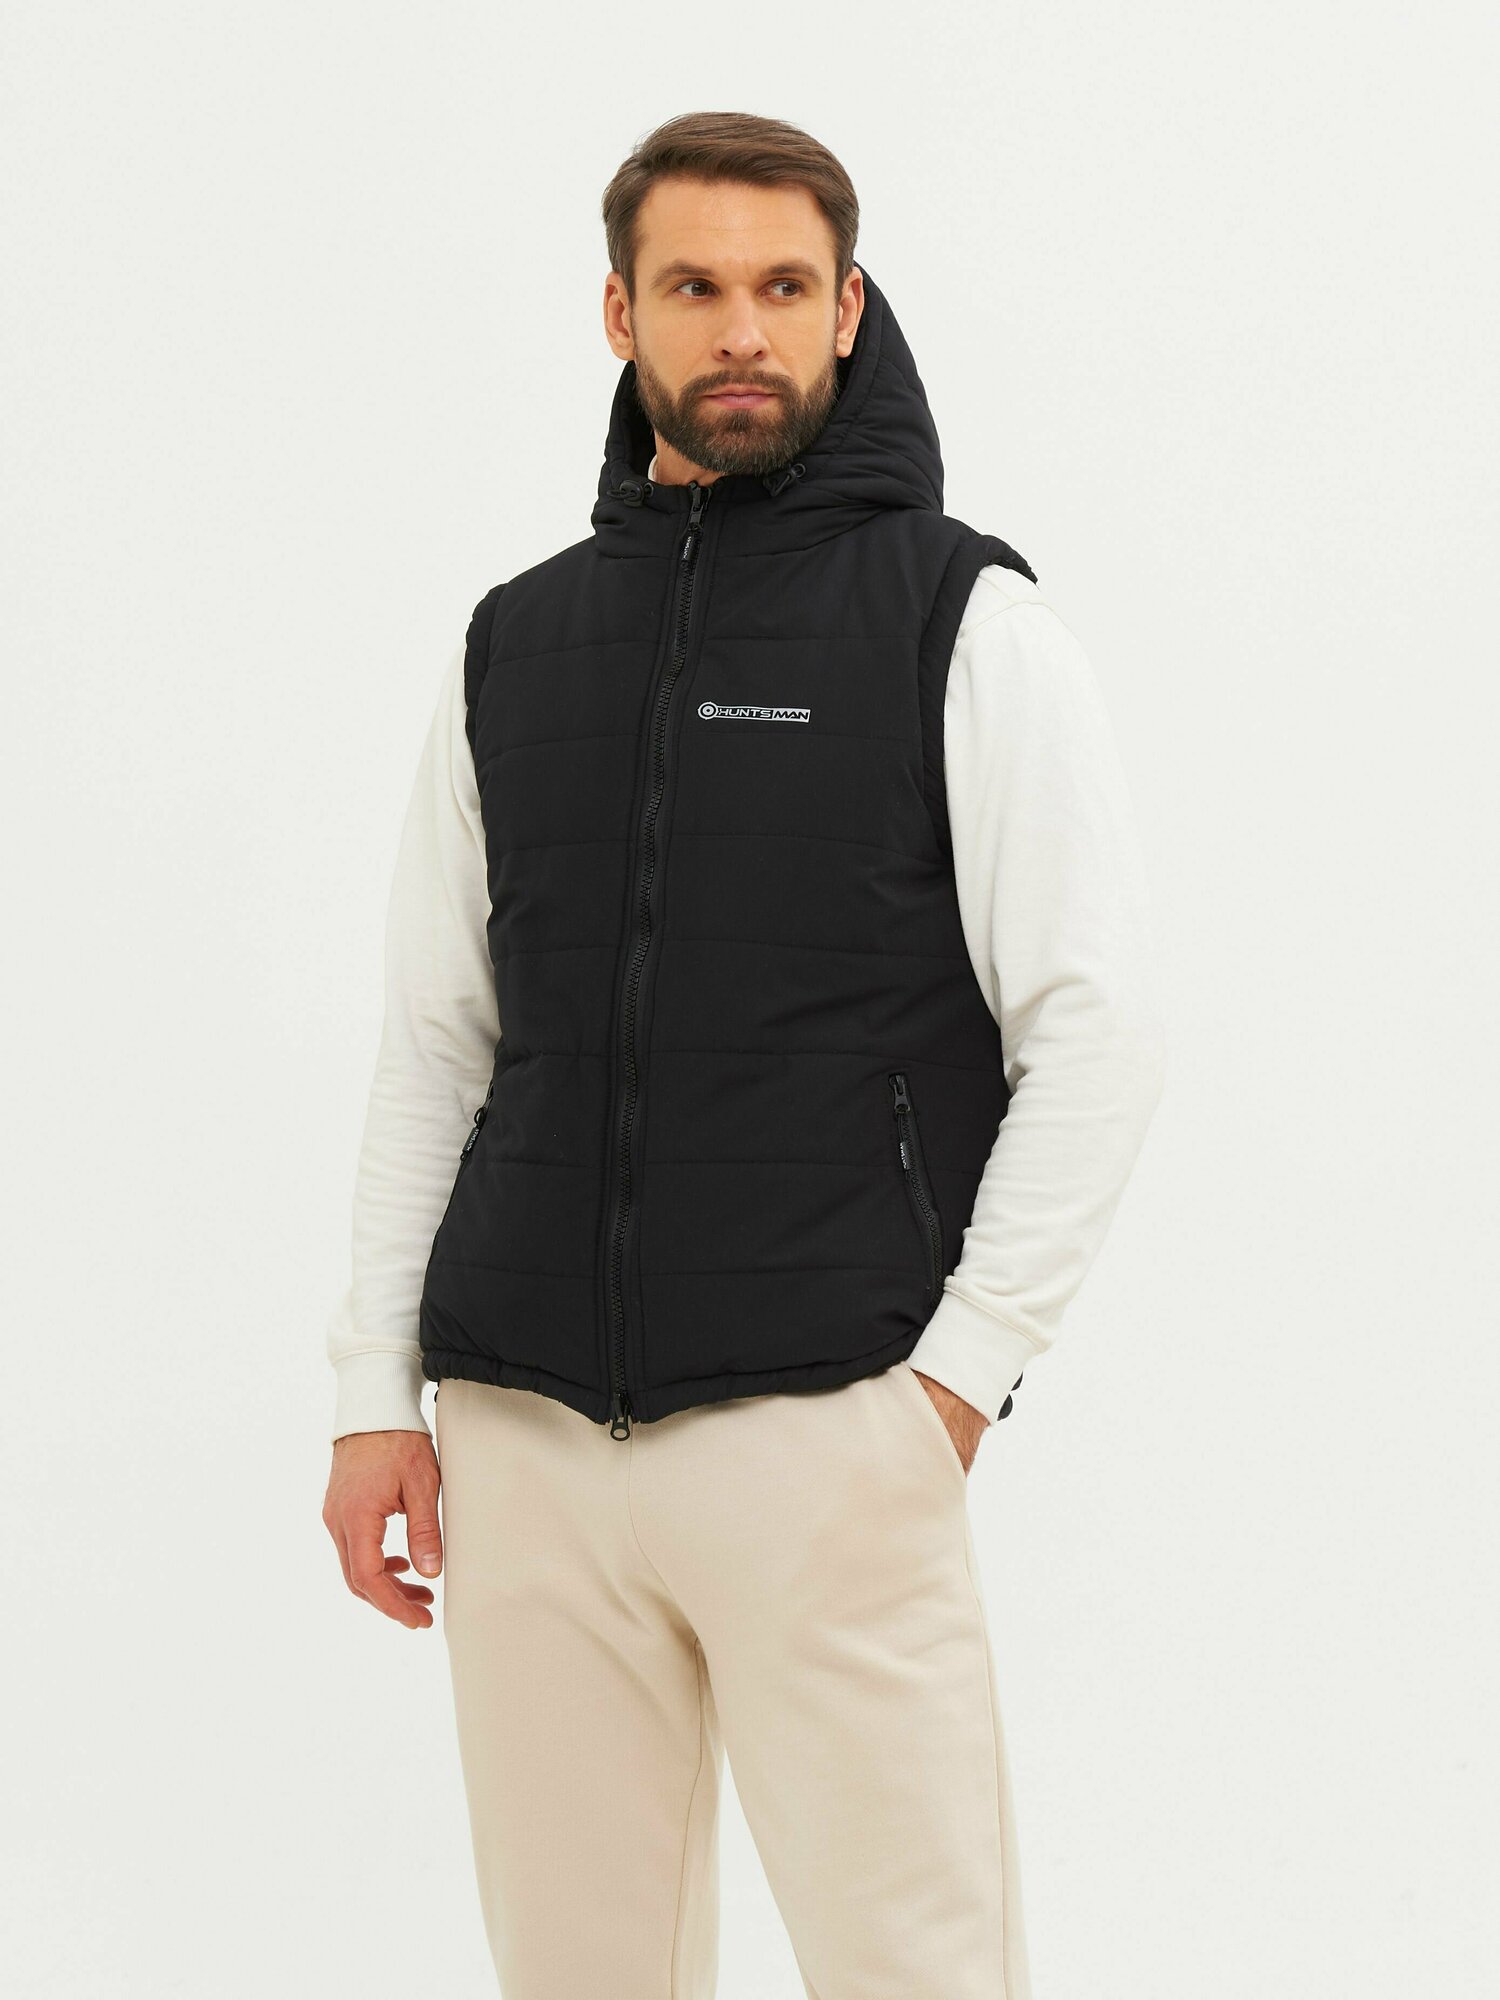 Жилет мужской утепленный демисезонный Huntsman Фристайл с карманами, капюшоном, ткань Канада, цвет черный (р.48-50/176)